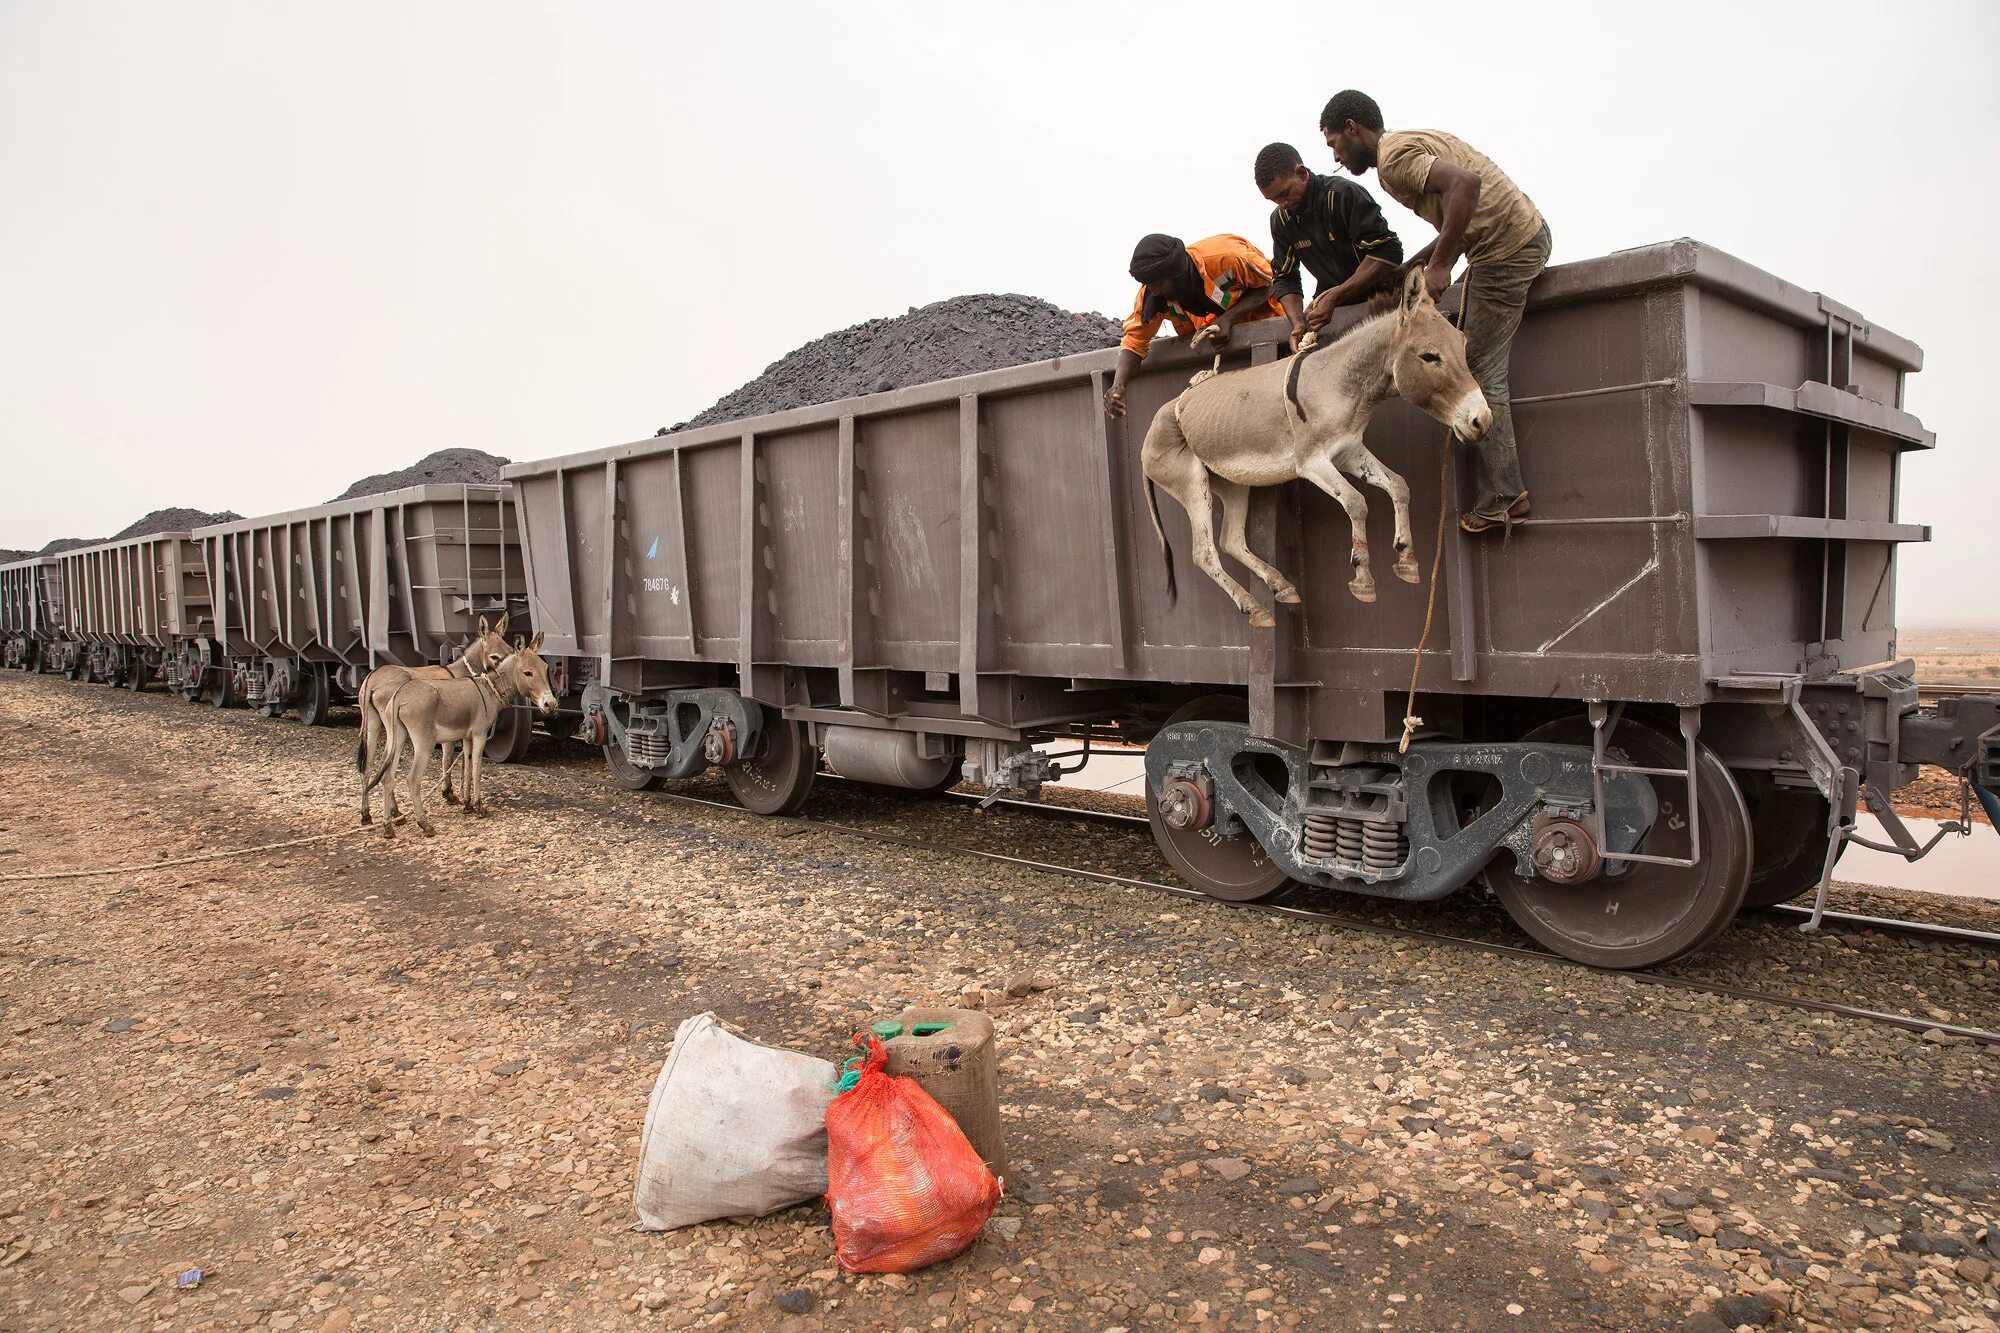 Виолончель перевозится в вагоне поезда. Самый длинный поезд в мире 682 вагона. Транспортировка животных. Вагон для перевозки животных. Перевозка живности в вагонах.